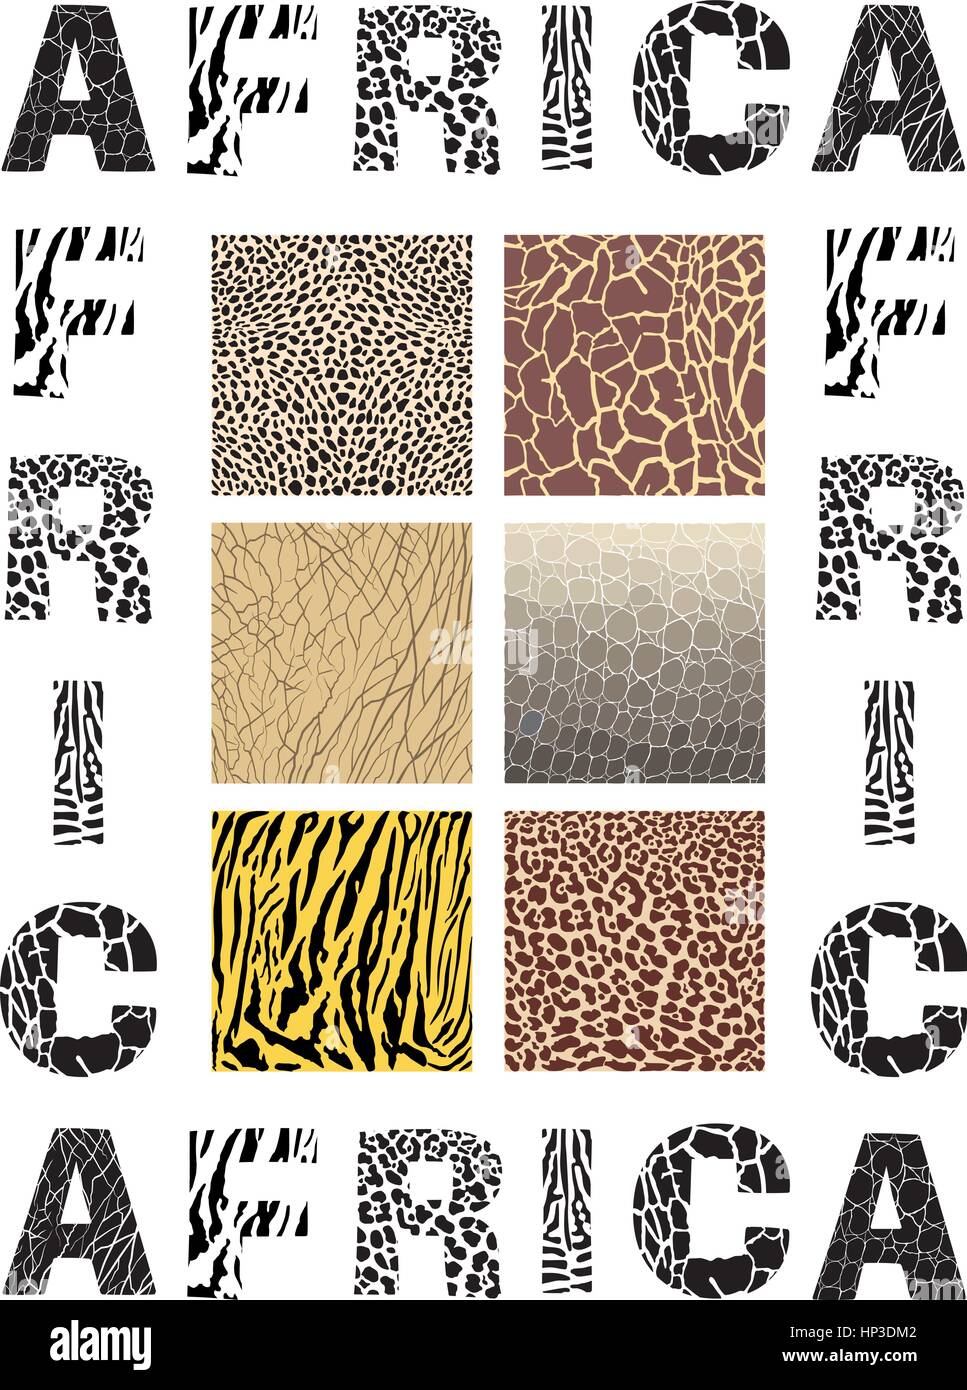 Vektor-Illustration Afrika - Hintergrund mit Text und Textur Wildtier Stock Vektor